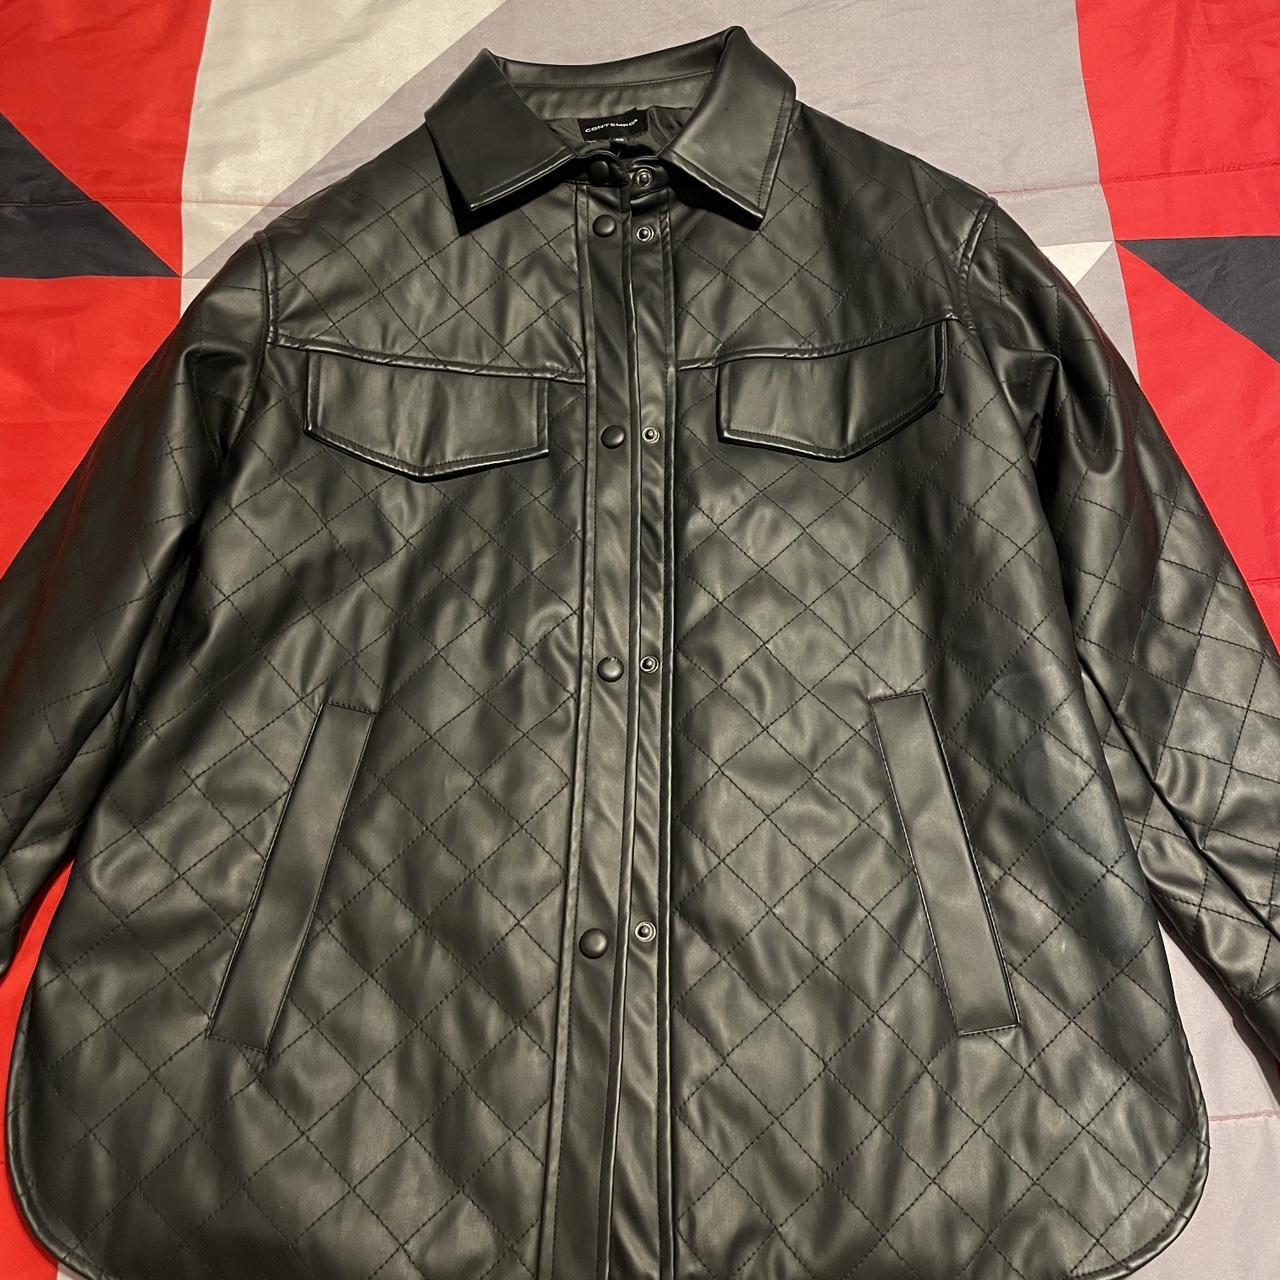 Black bomber jacket - Depop